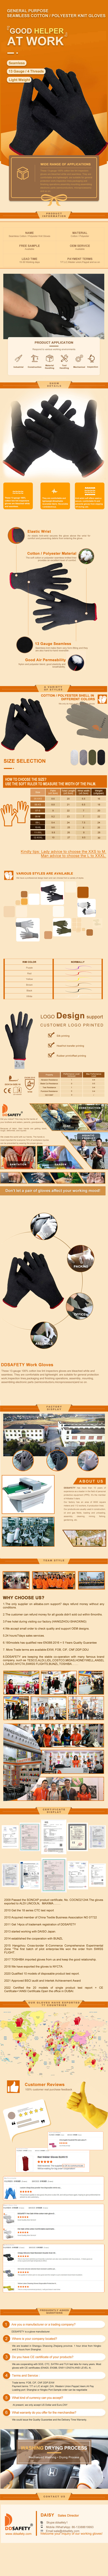 13 Gauge Black Polyester 150D 2 Threads Knit Gloves - DCK134 13 Gauge Black Polyester 150D 2 Threads Knit Gloves - DCK134 gloves,mittens,cotton gloves,cotton work gloves,String Knit work gloves gloves